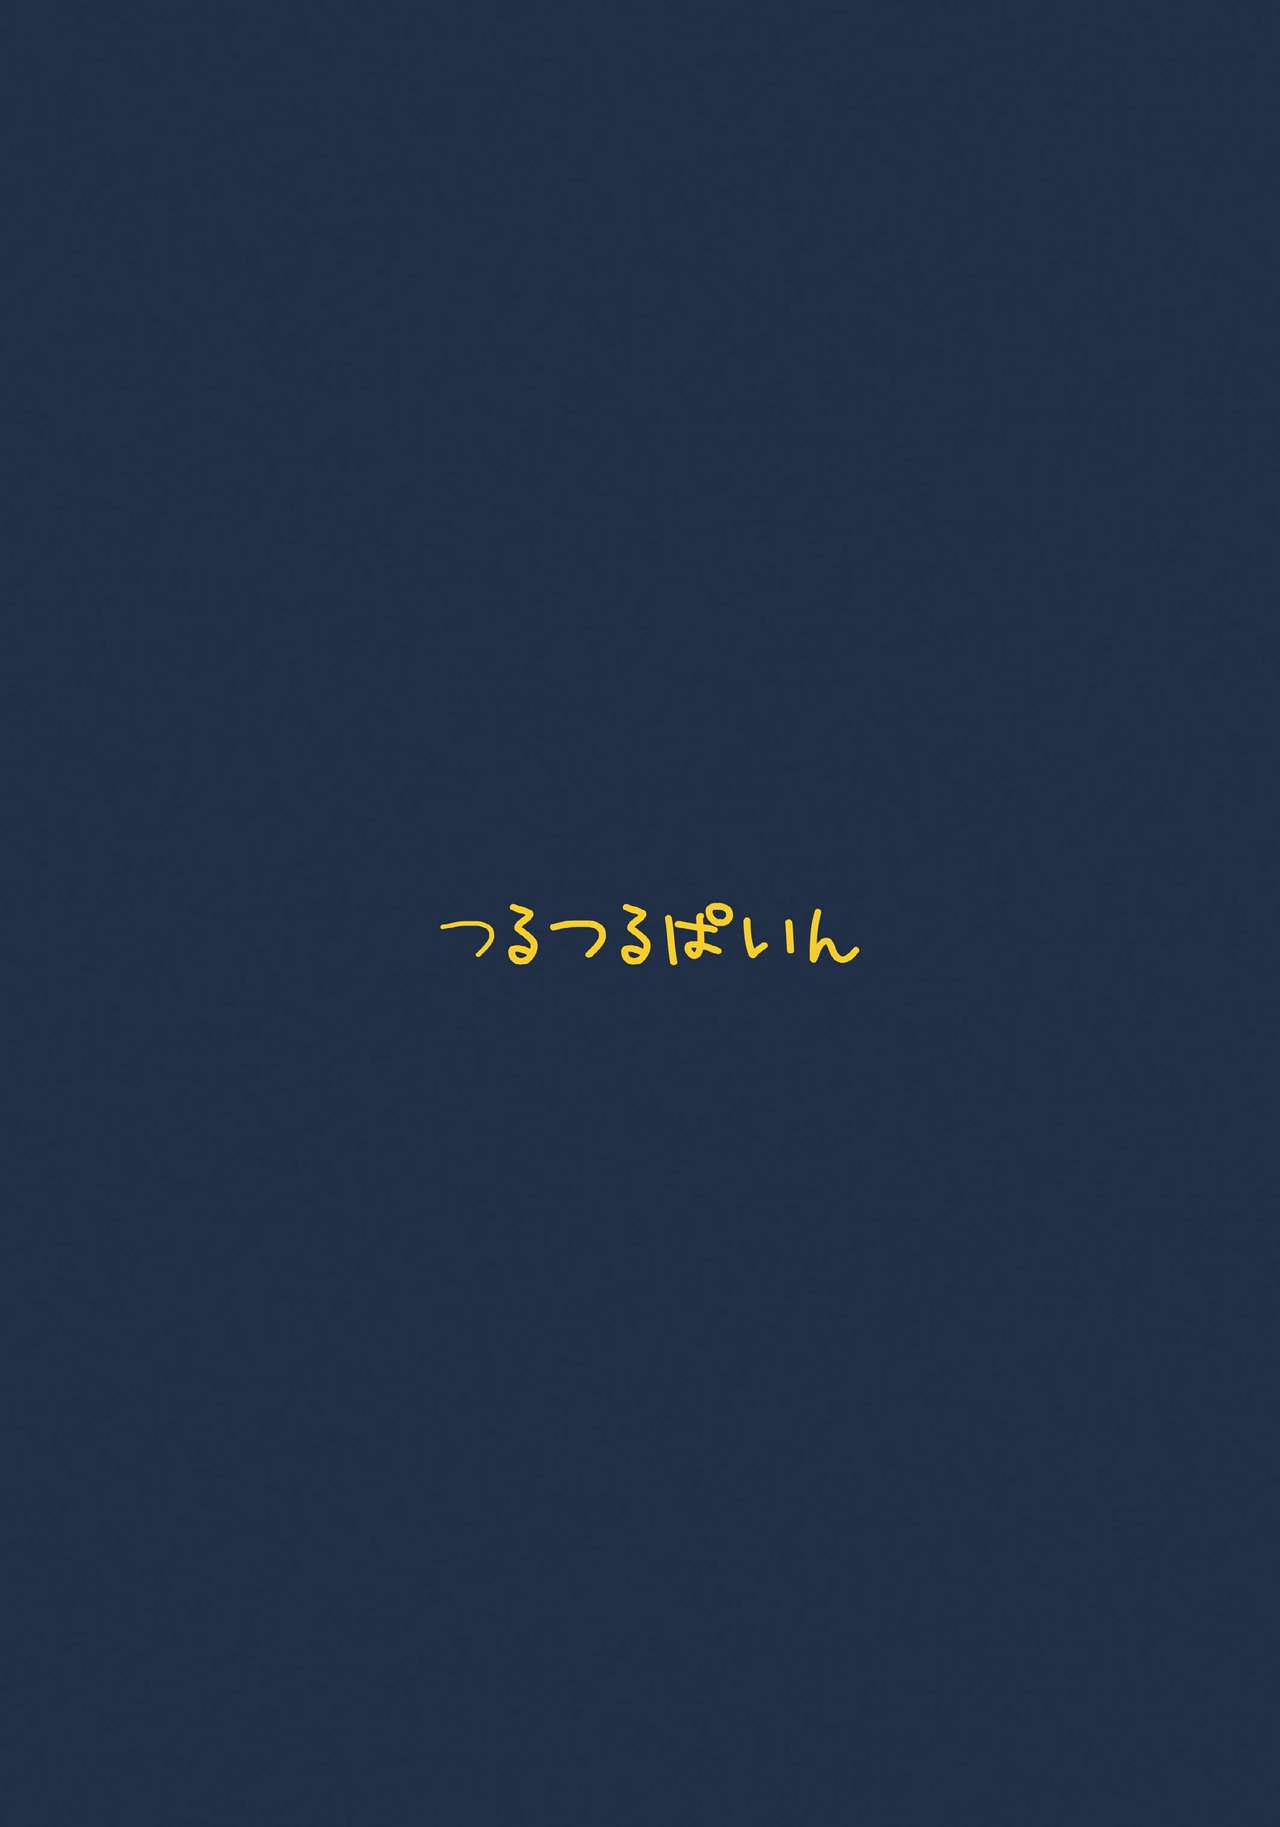 [Tsurutsuru Pain (Pikeru)] Exhibitionismus - Ippai Dechatta (Boku wa Tomodachi ga Sukunai) [Digital] [つるつるぱいん (ピケル)] Exhibitionismus いっぱいでちゃった (僕は友達が少ない) [DL版]